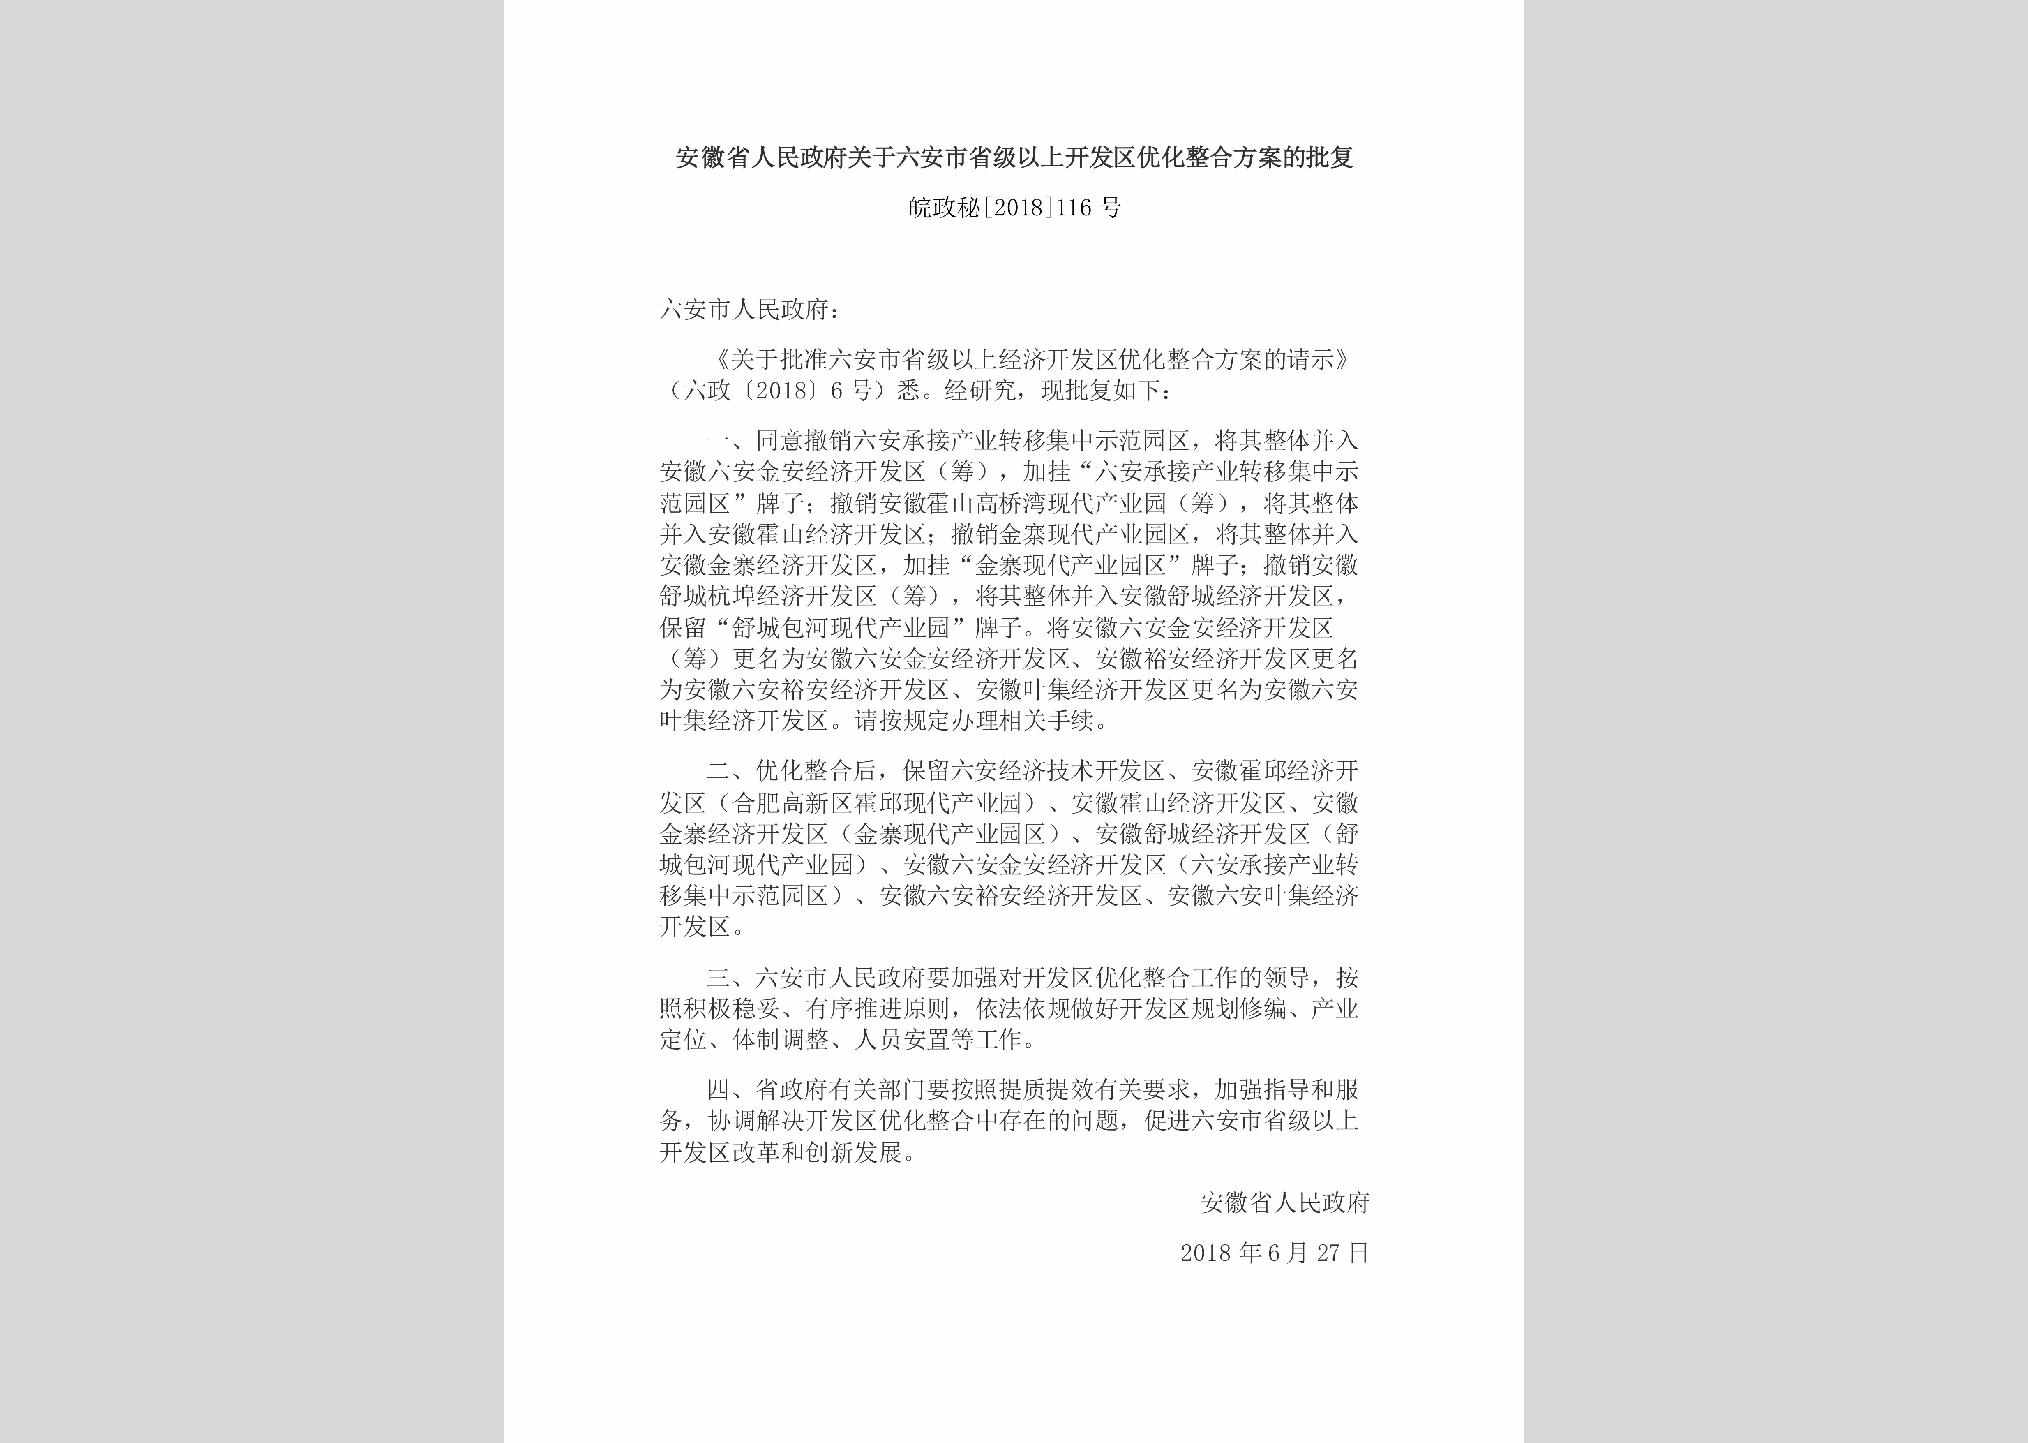 皖政秘[2018]116号：安徽省人民政府关于六安市省级以上开发区优化整合方案的批复